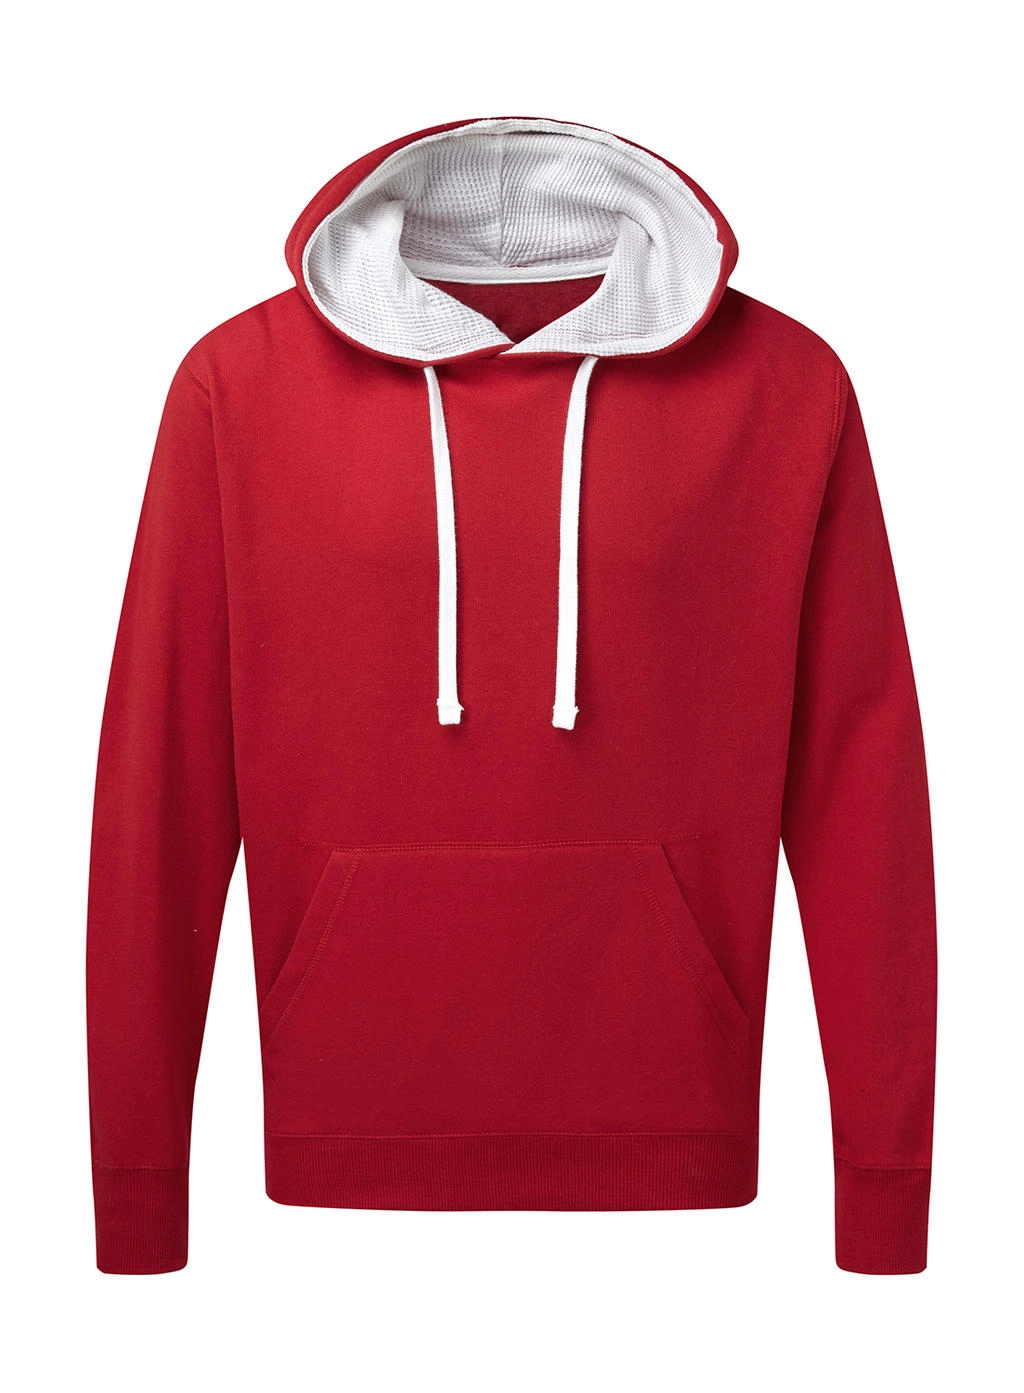 Contrast Hooded Sweatshirt Men zum Besticken und Bedrucken in der Farbe Red/White mit Ihren Logo, Schriftzug oder Motiv.